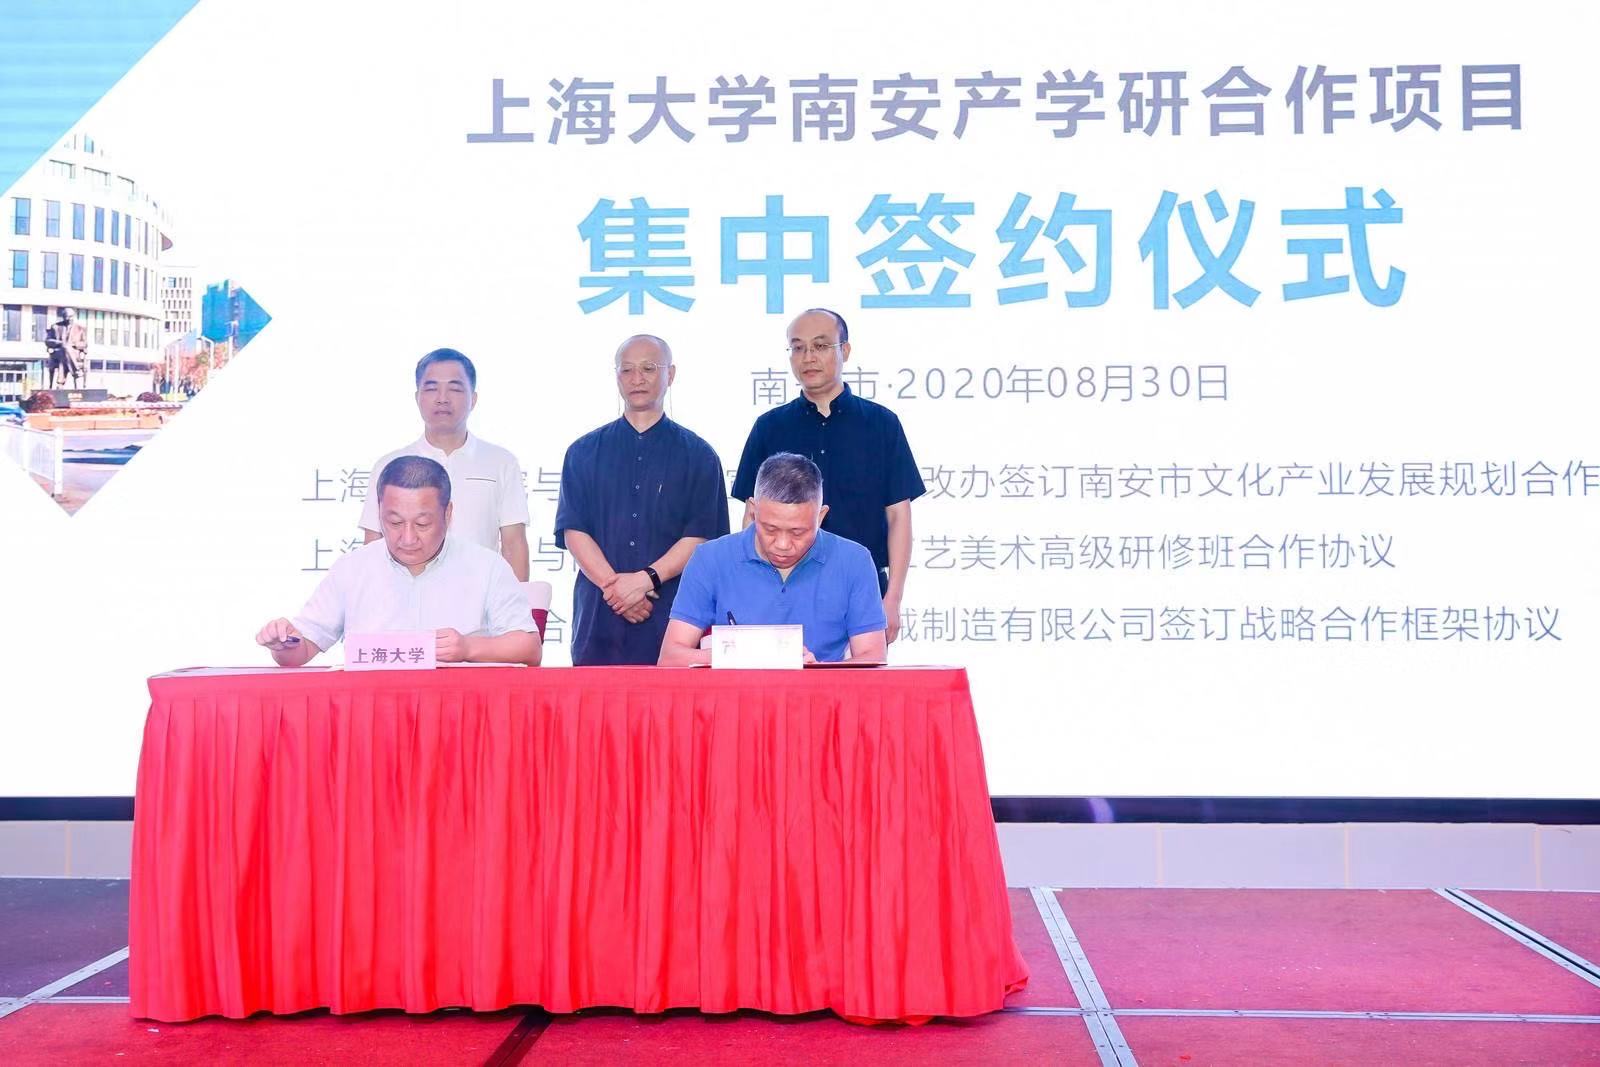 احتفل بحرارة بتوقيع اتفاقية التعاون الاستراتيجي بين جامعة شنغهاي وSL وحفل افتتاح مركز أبحاث التكنولوجيا الهندسية لمعدات حماية البيئة المتقدمة